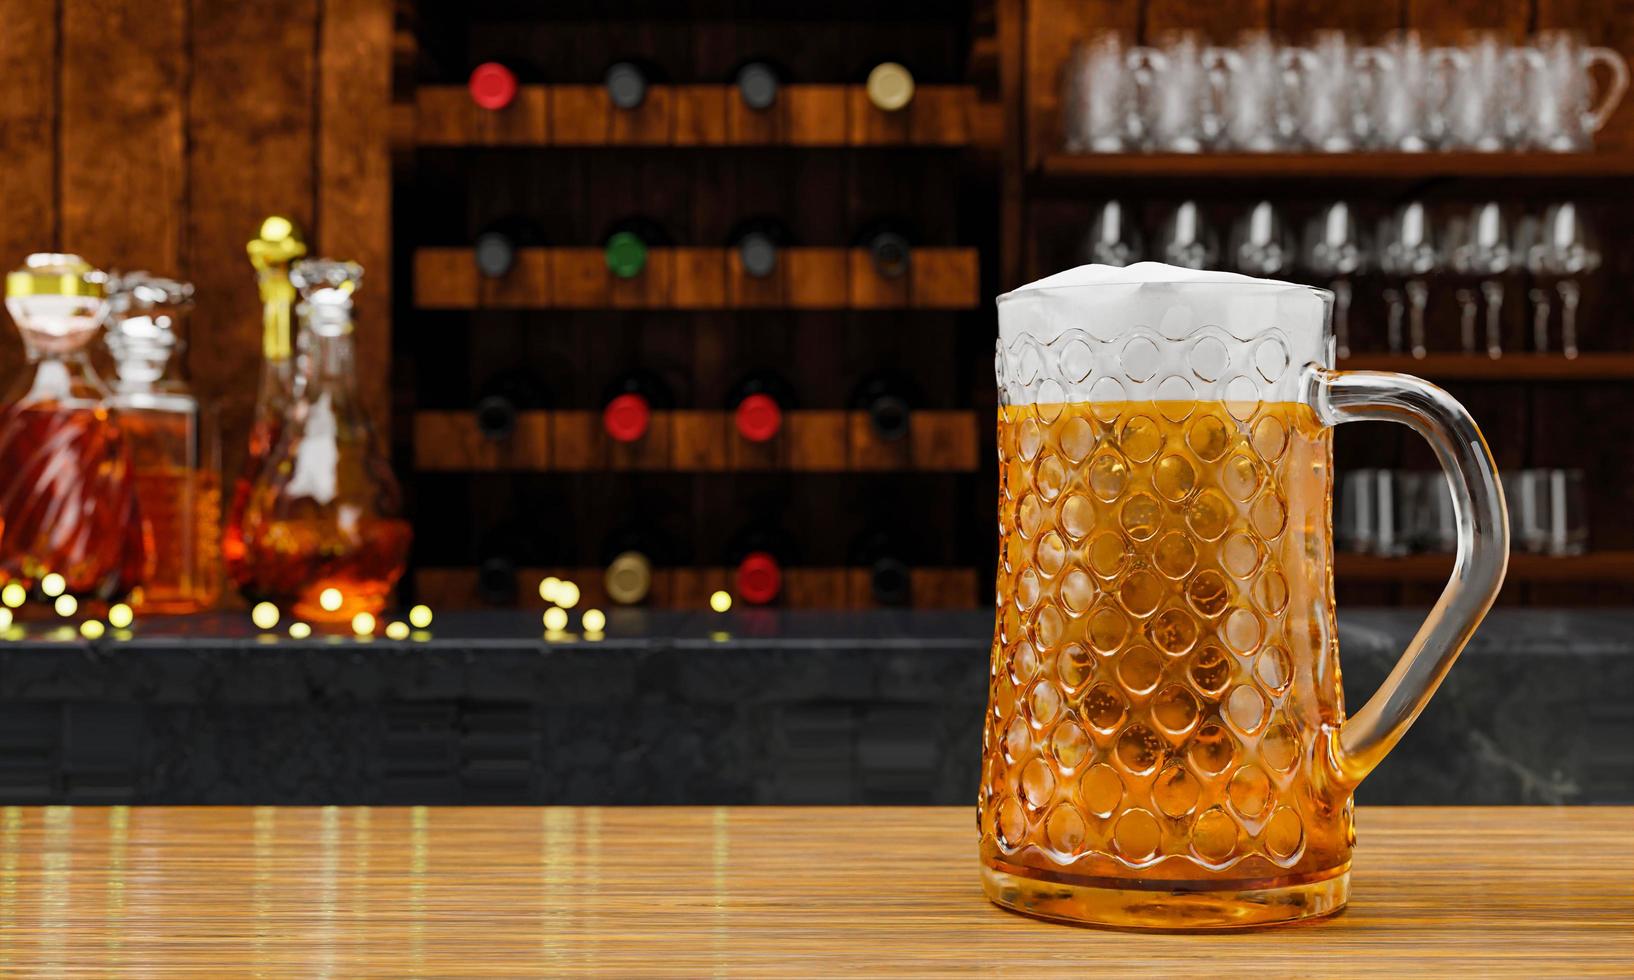 chope ou cerveja artesanal em copo alto e transparente. com vapor frio, espuma de cerveja branca colocada sobre um piso de madeira, atrás do fundo é uma garrafa de vinho, uísque, conhaque no restaurante ou bar. renderização em 3D foto